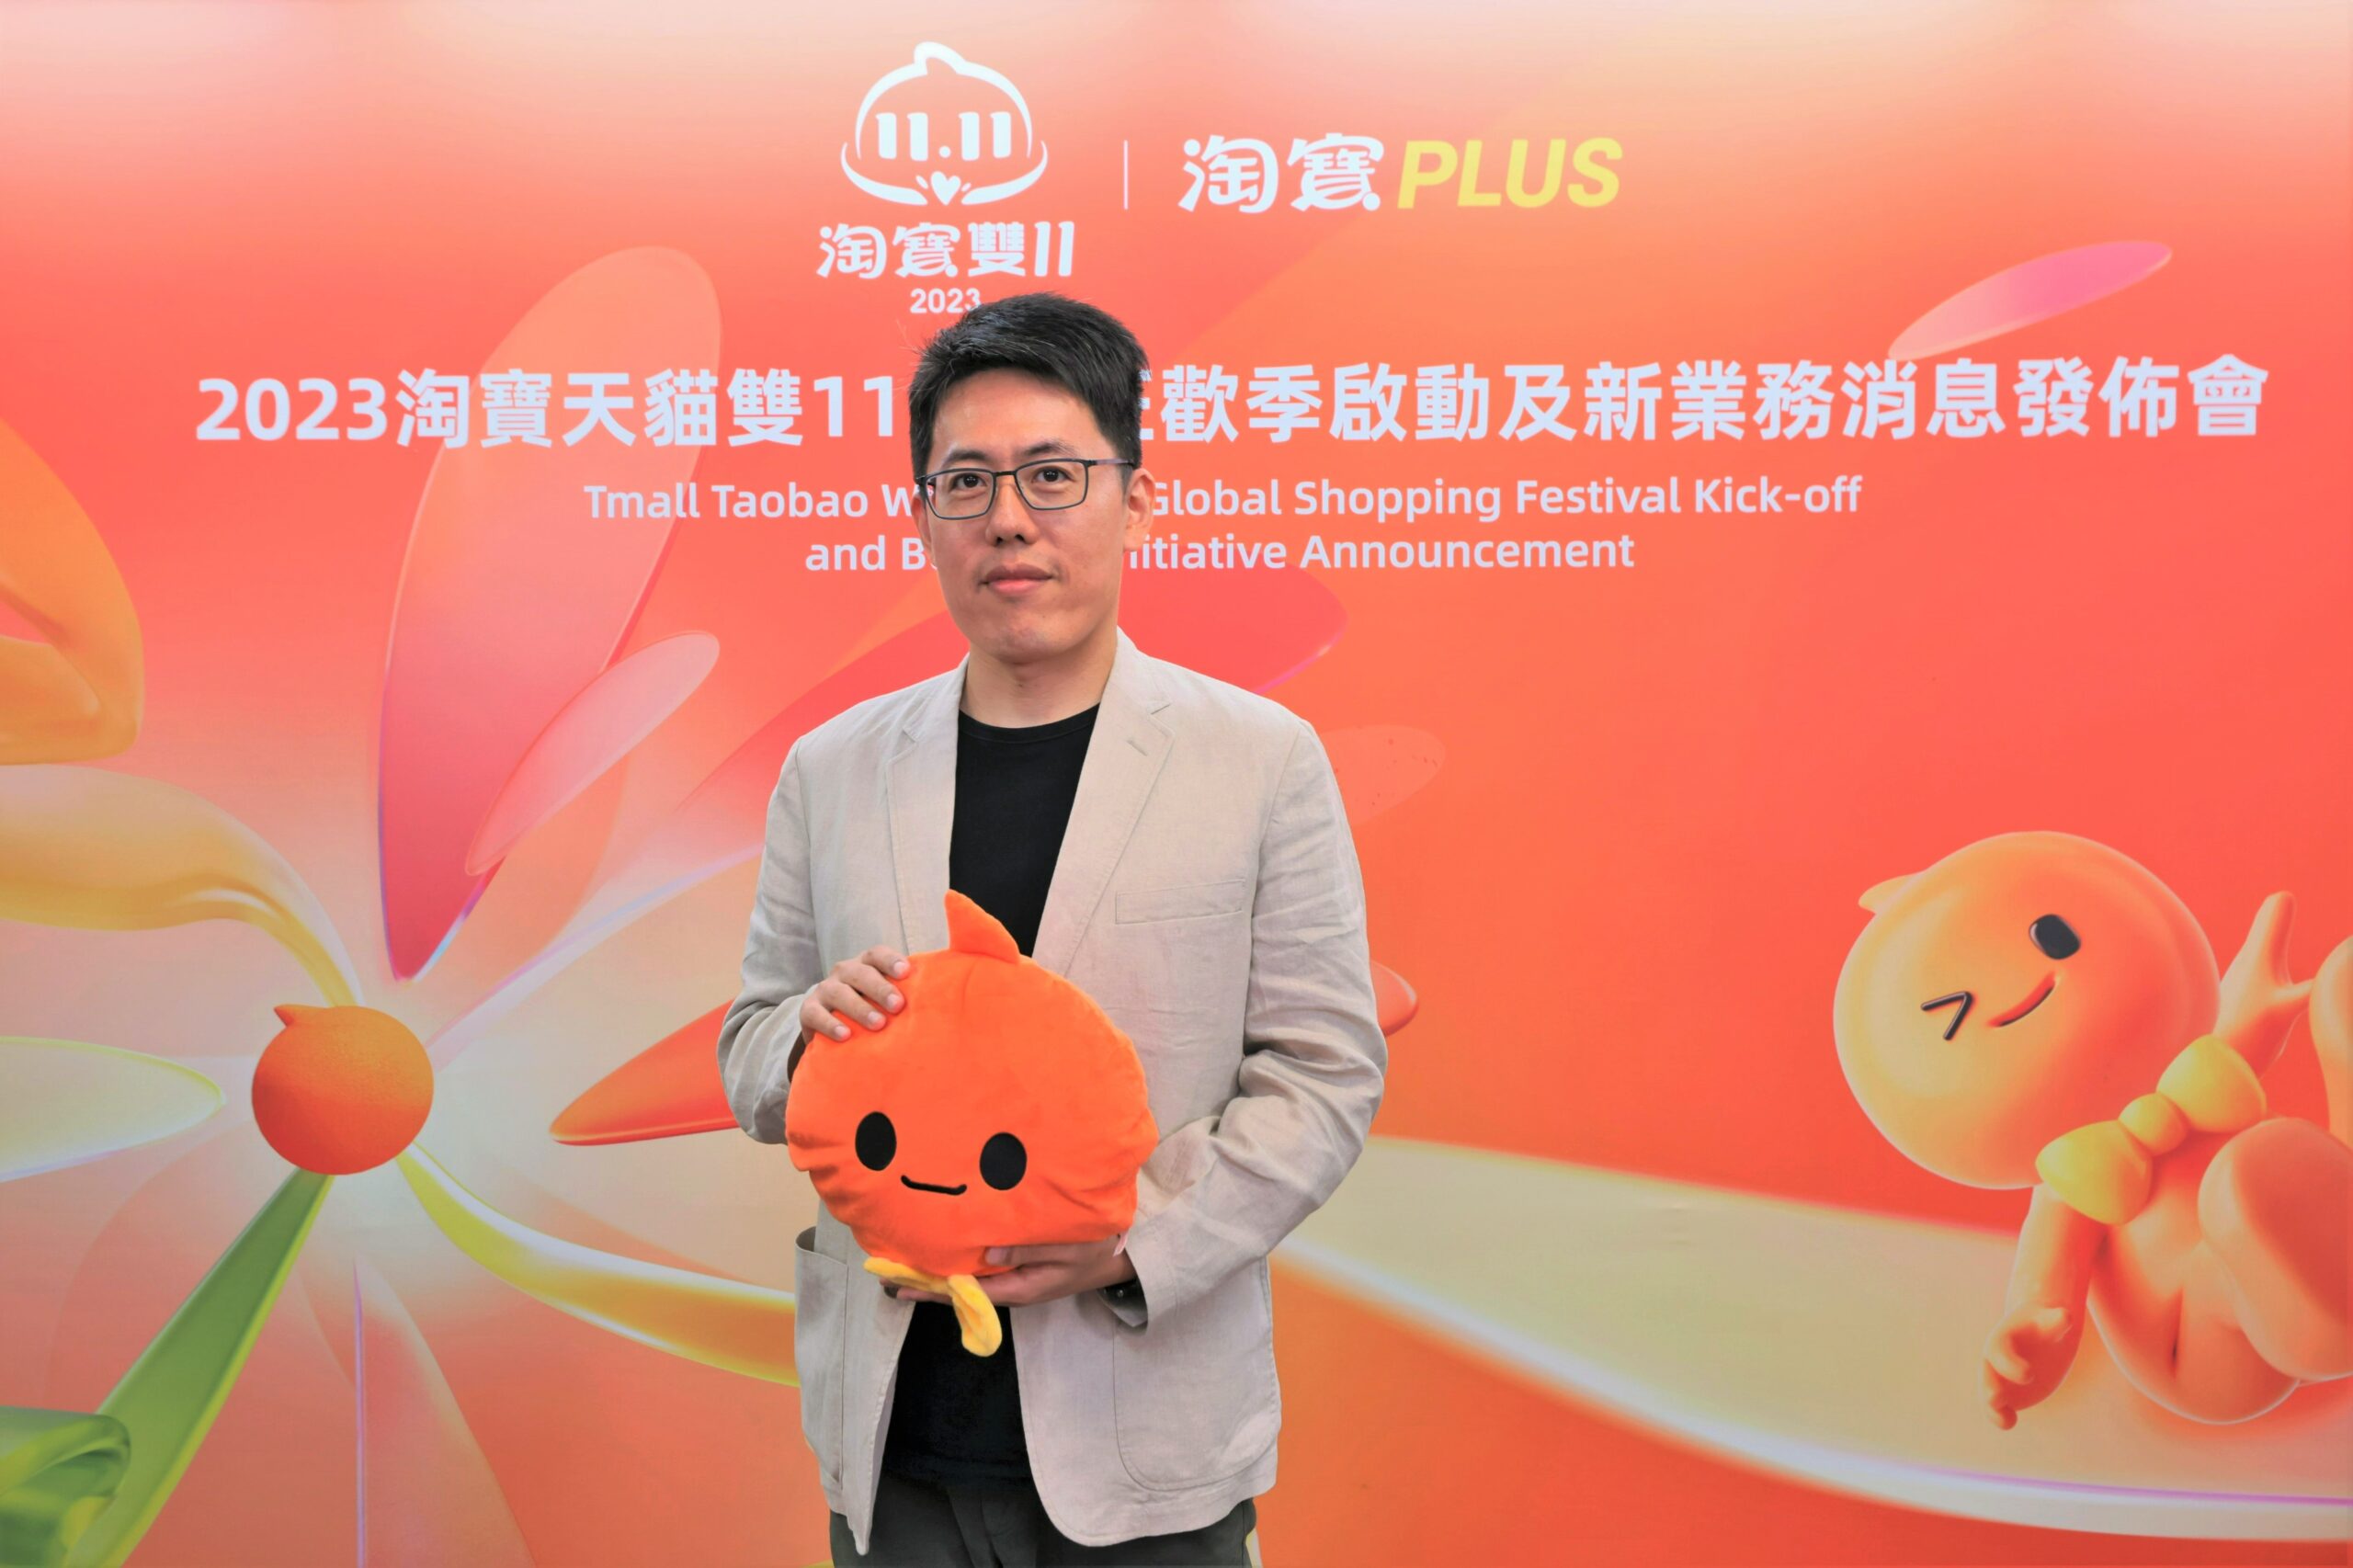 天猫淘宝海外事业部总经理叶剑秋宣布，为马来西亚等五个亚洲市场的消费者推出跨境服务新品牌 —— 淘宝PLUS scaled